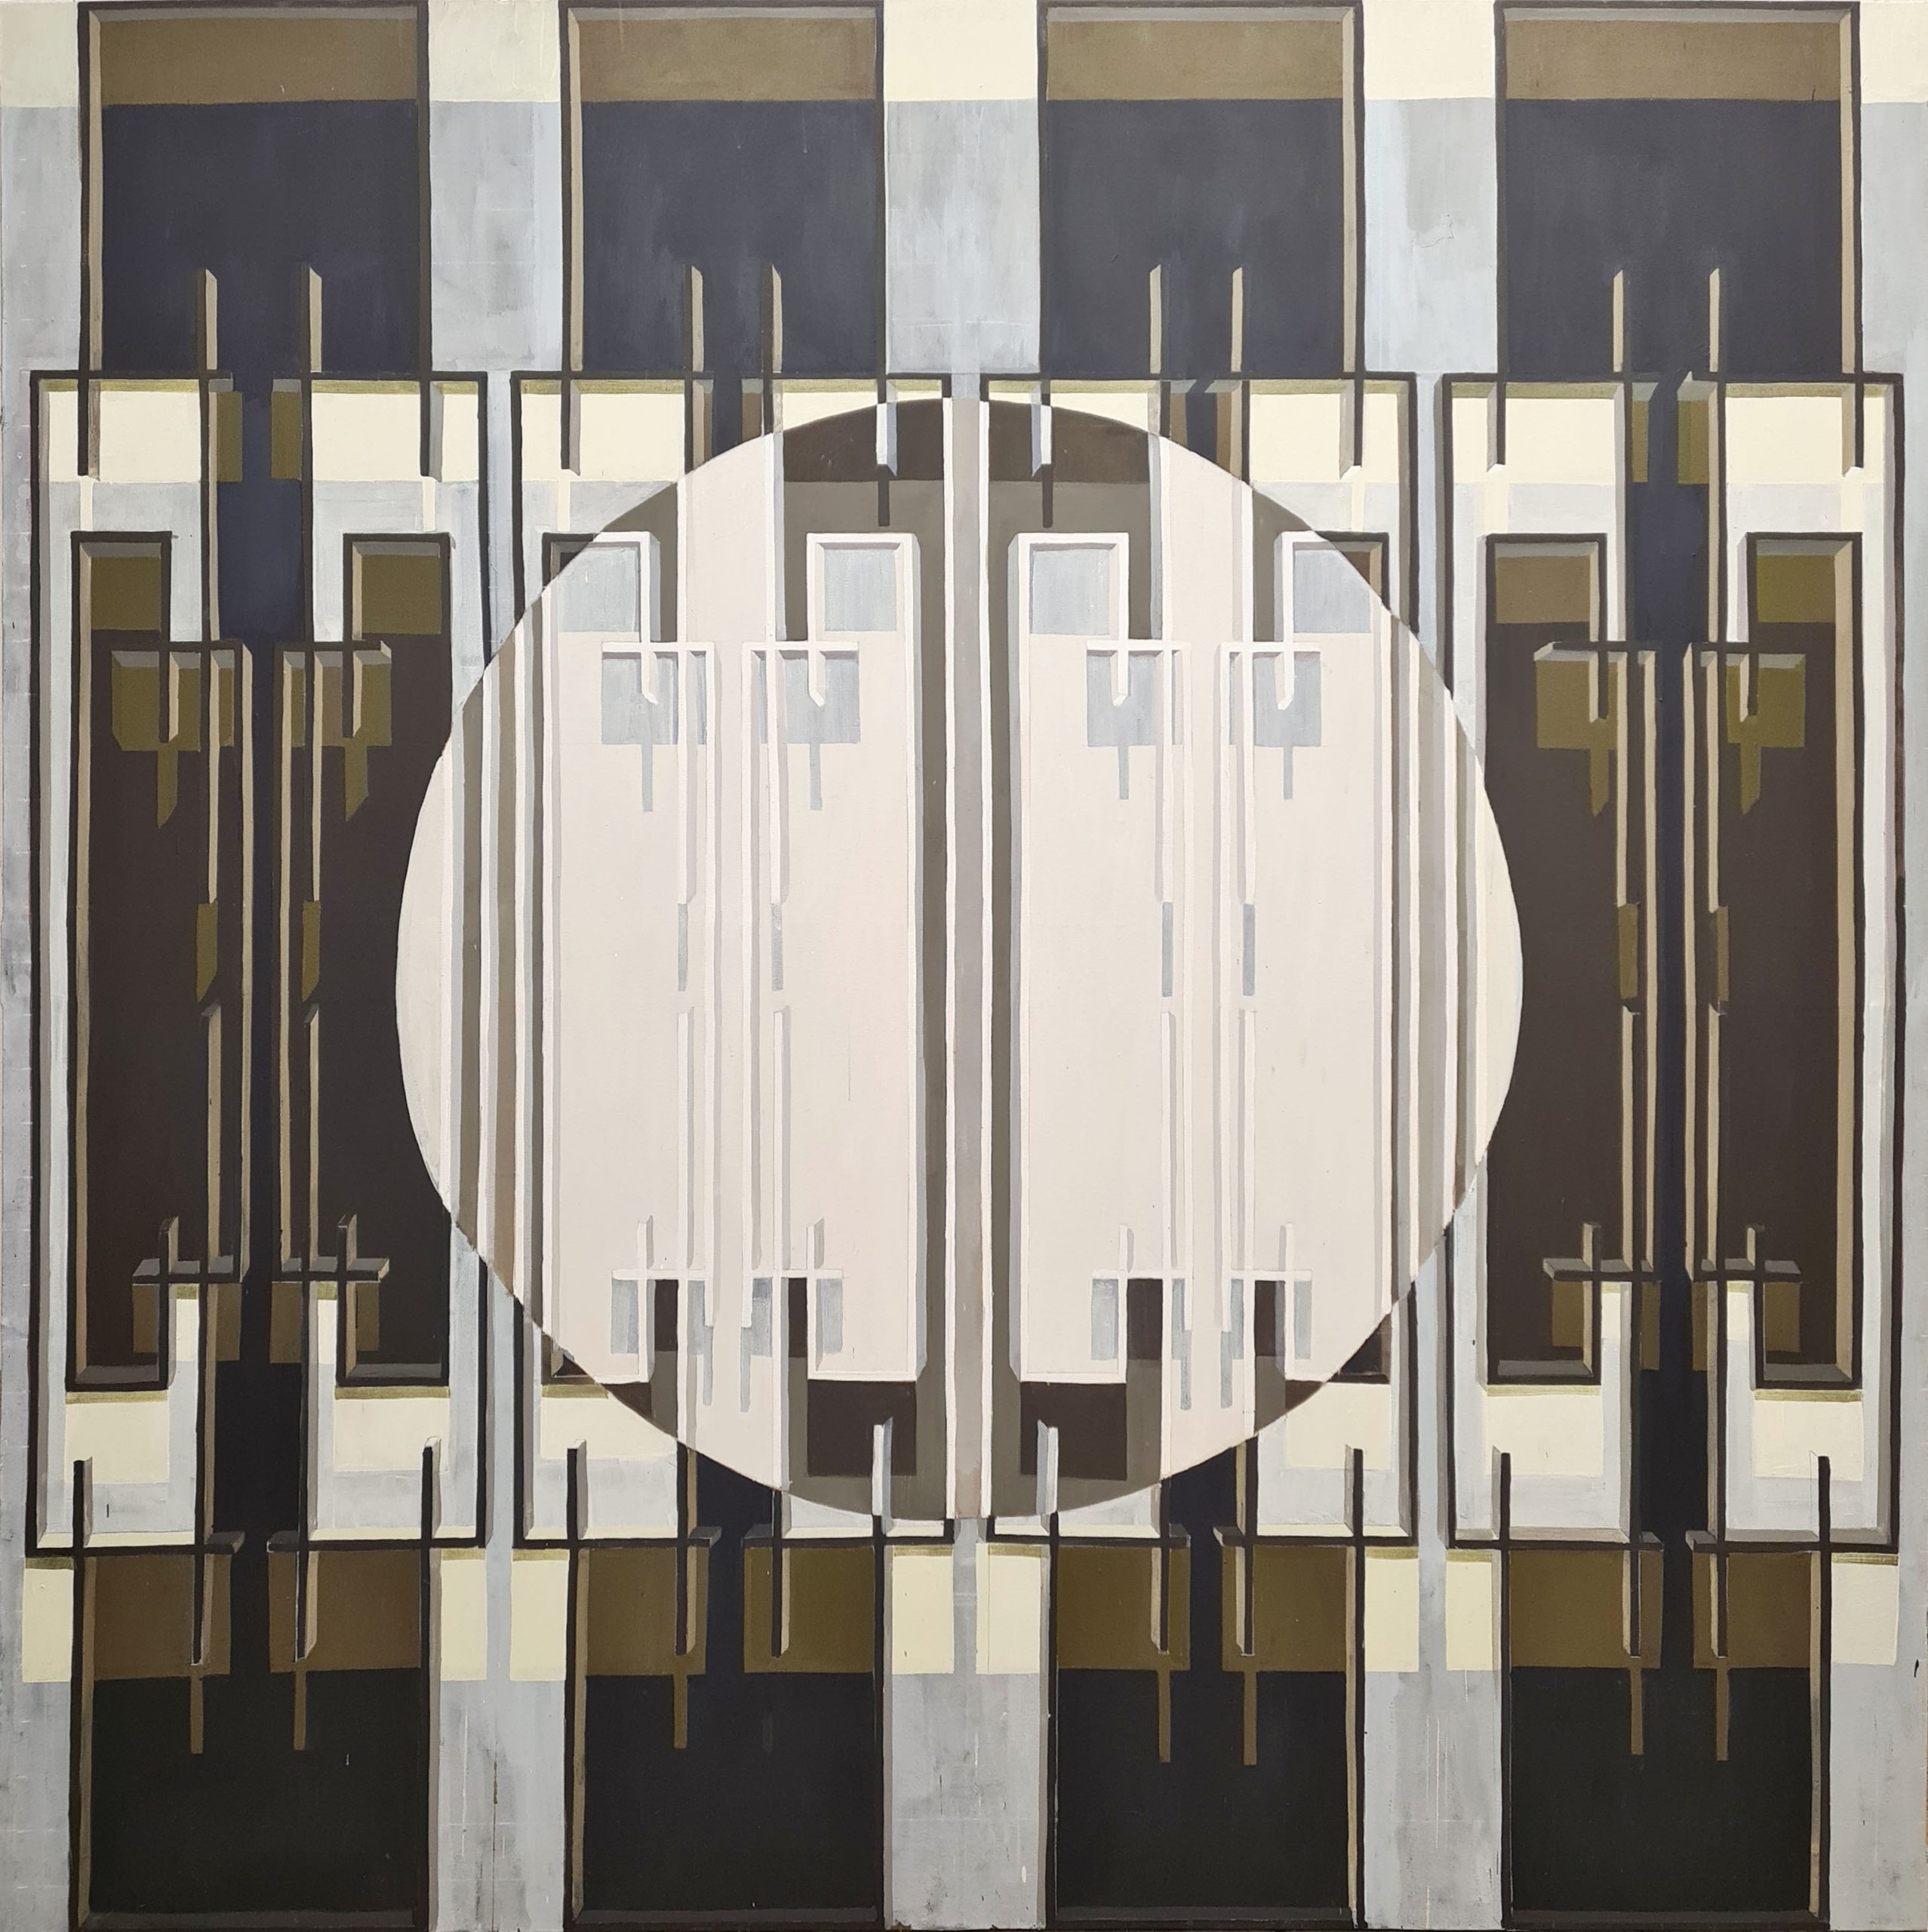 Linnea Rygaard, It, 2022, acrylics on canvas, 180 x 180 cm